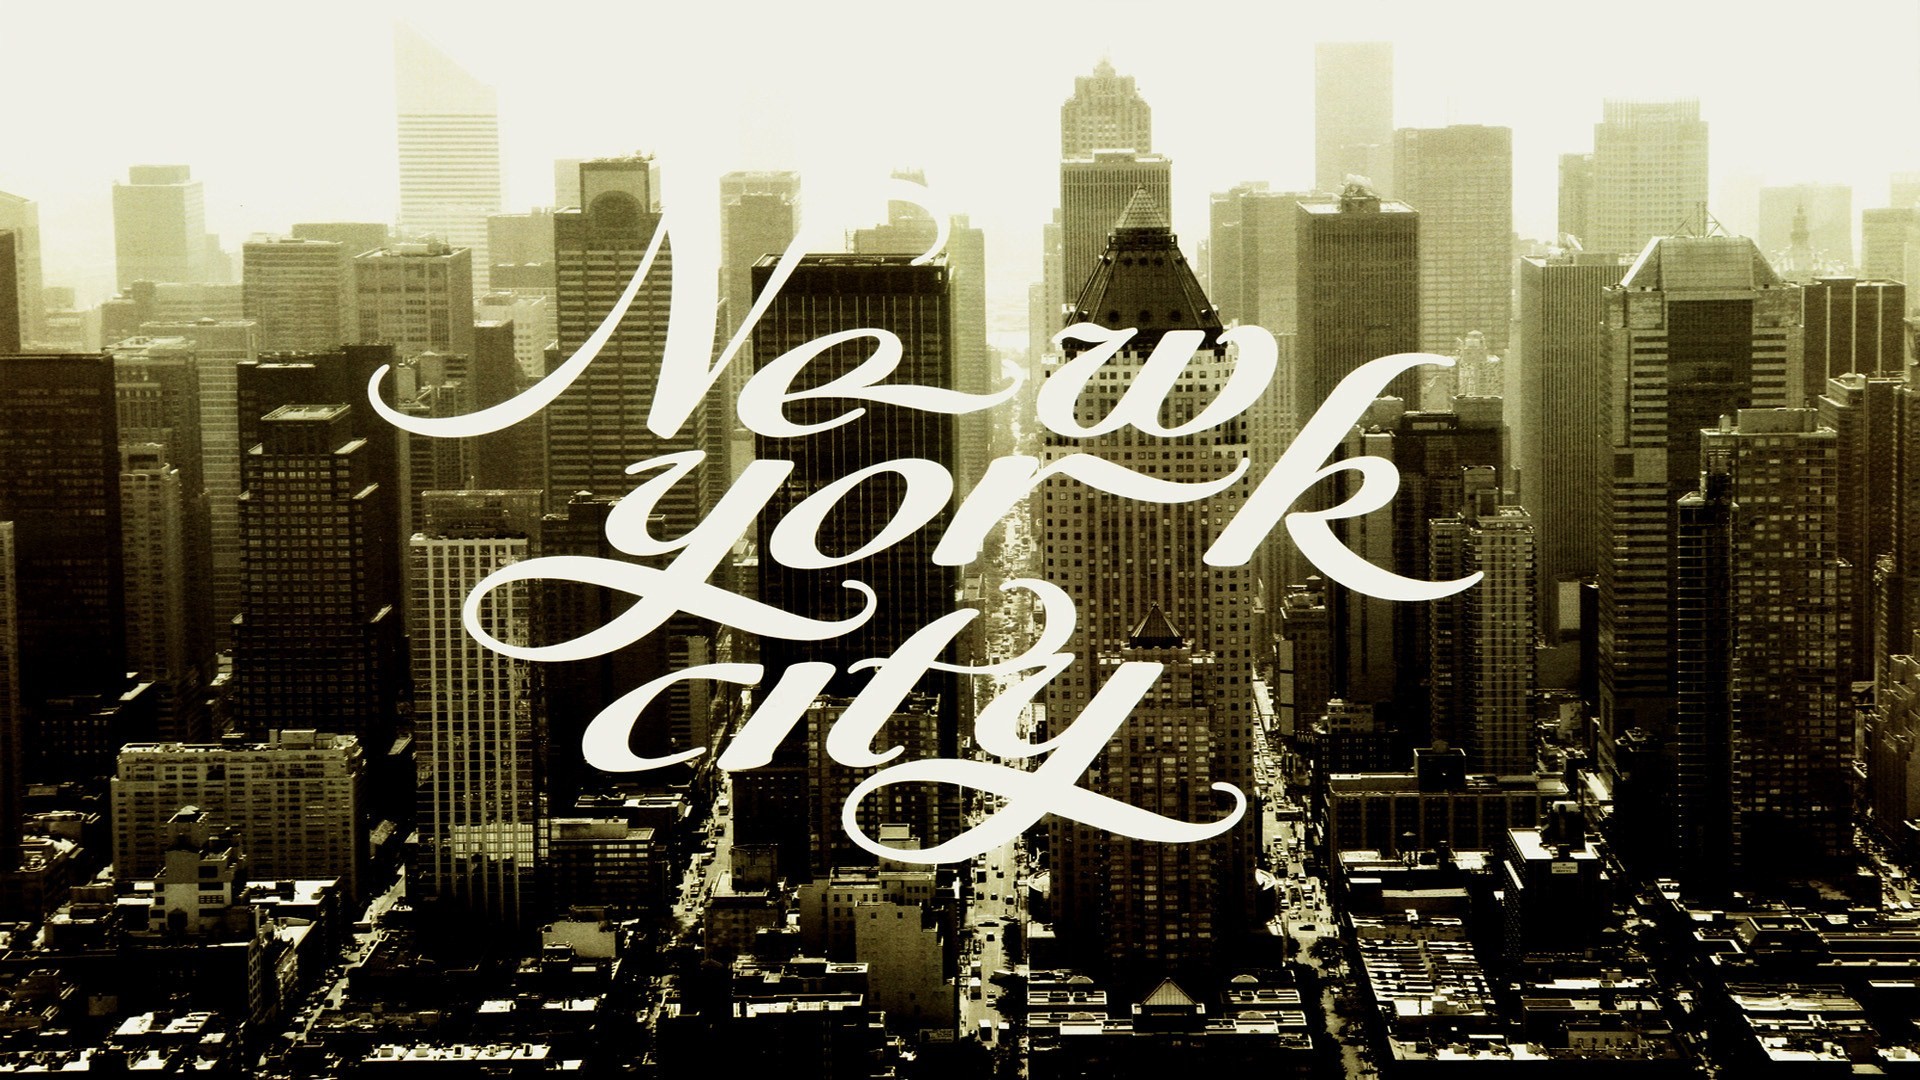 города, ретро, Нью-Йорк, города - обои на рабочий стол